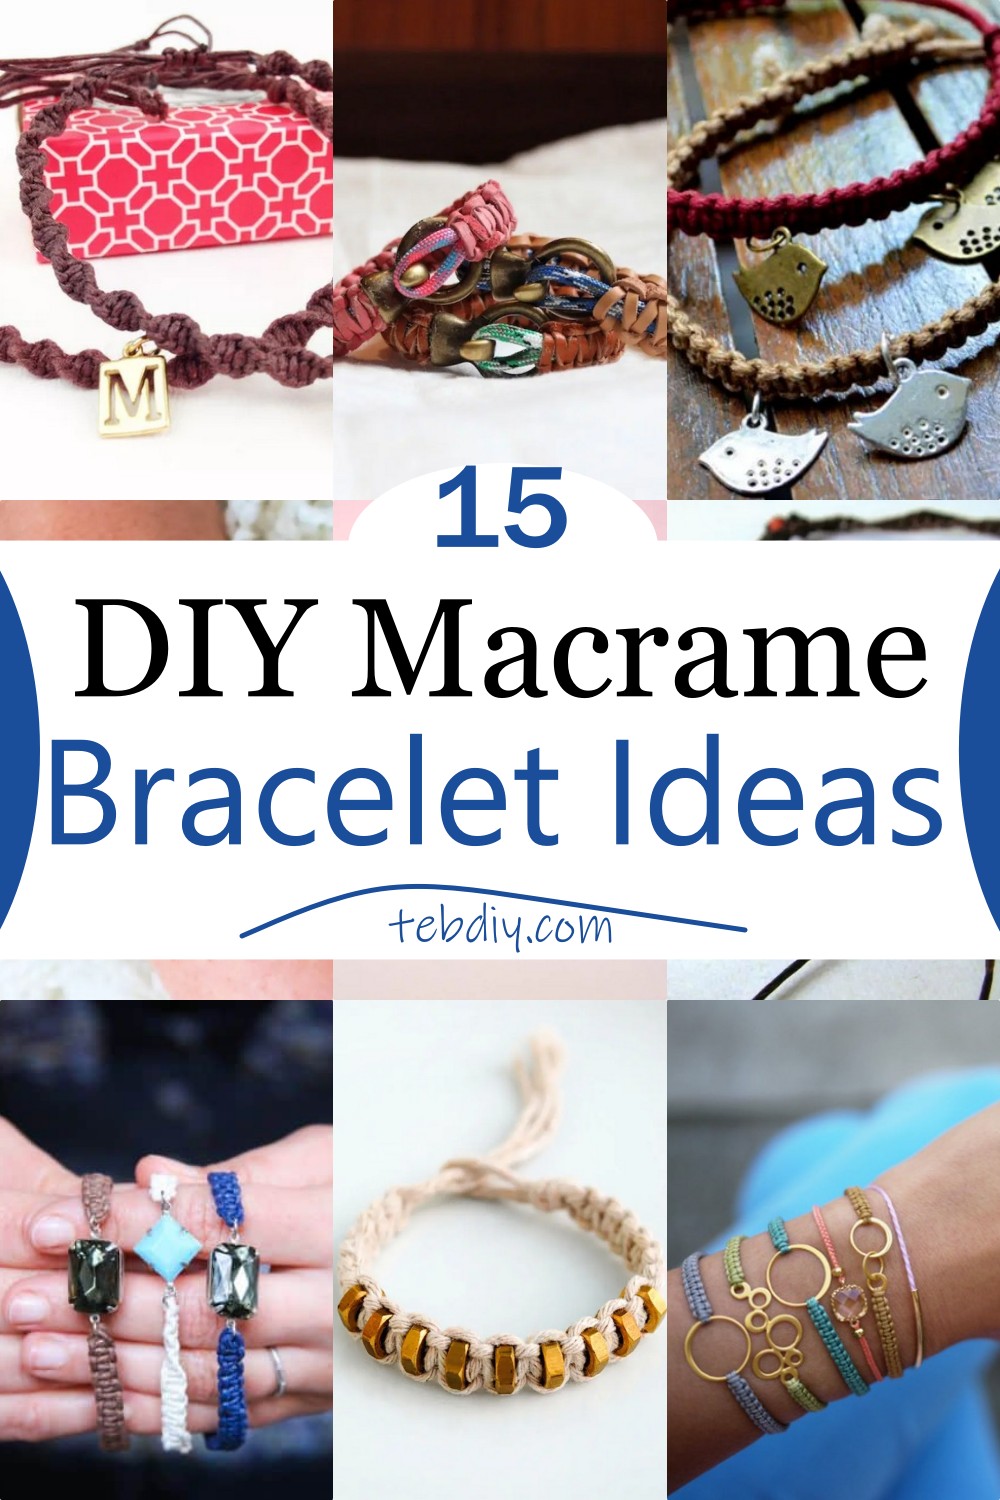 15 DIY Macrame Bracelet Ideas